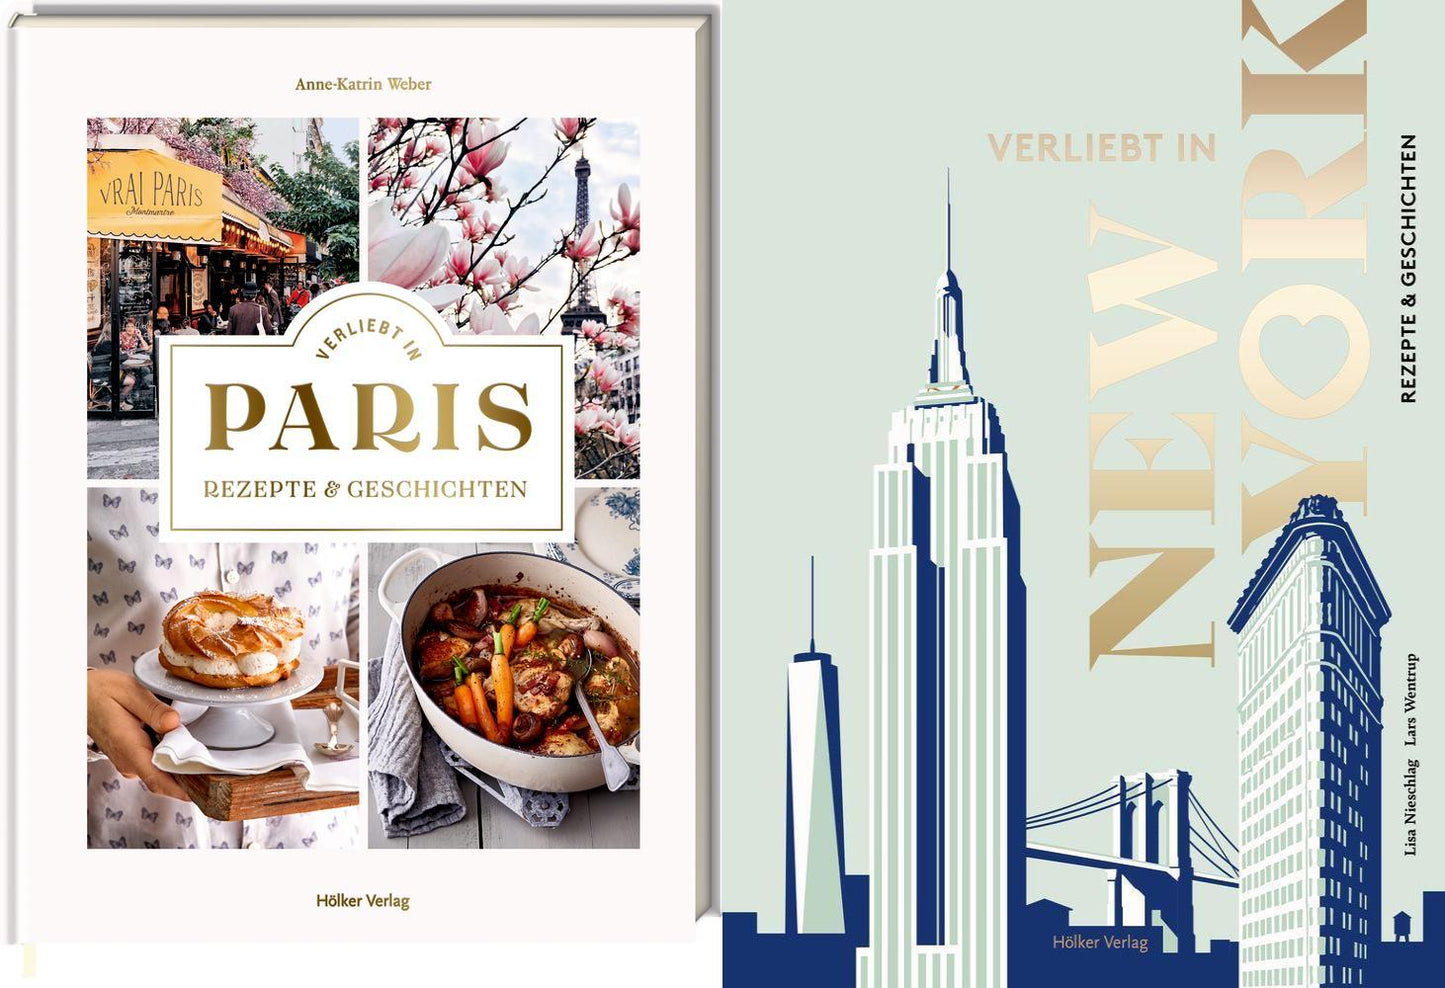 Verliebt in Paris und New York: 2 Rezept- und Geschichtenbücher im Set + 1 exklusives Postkartenset